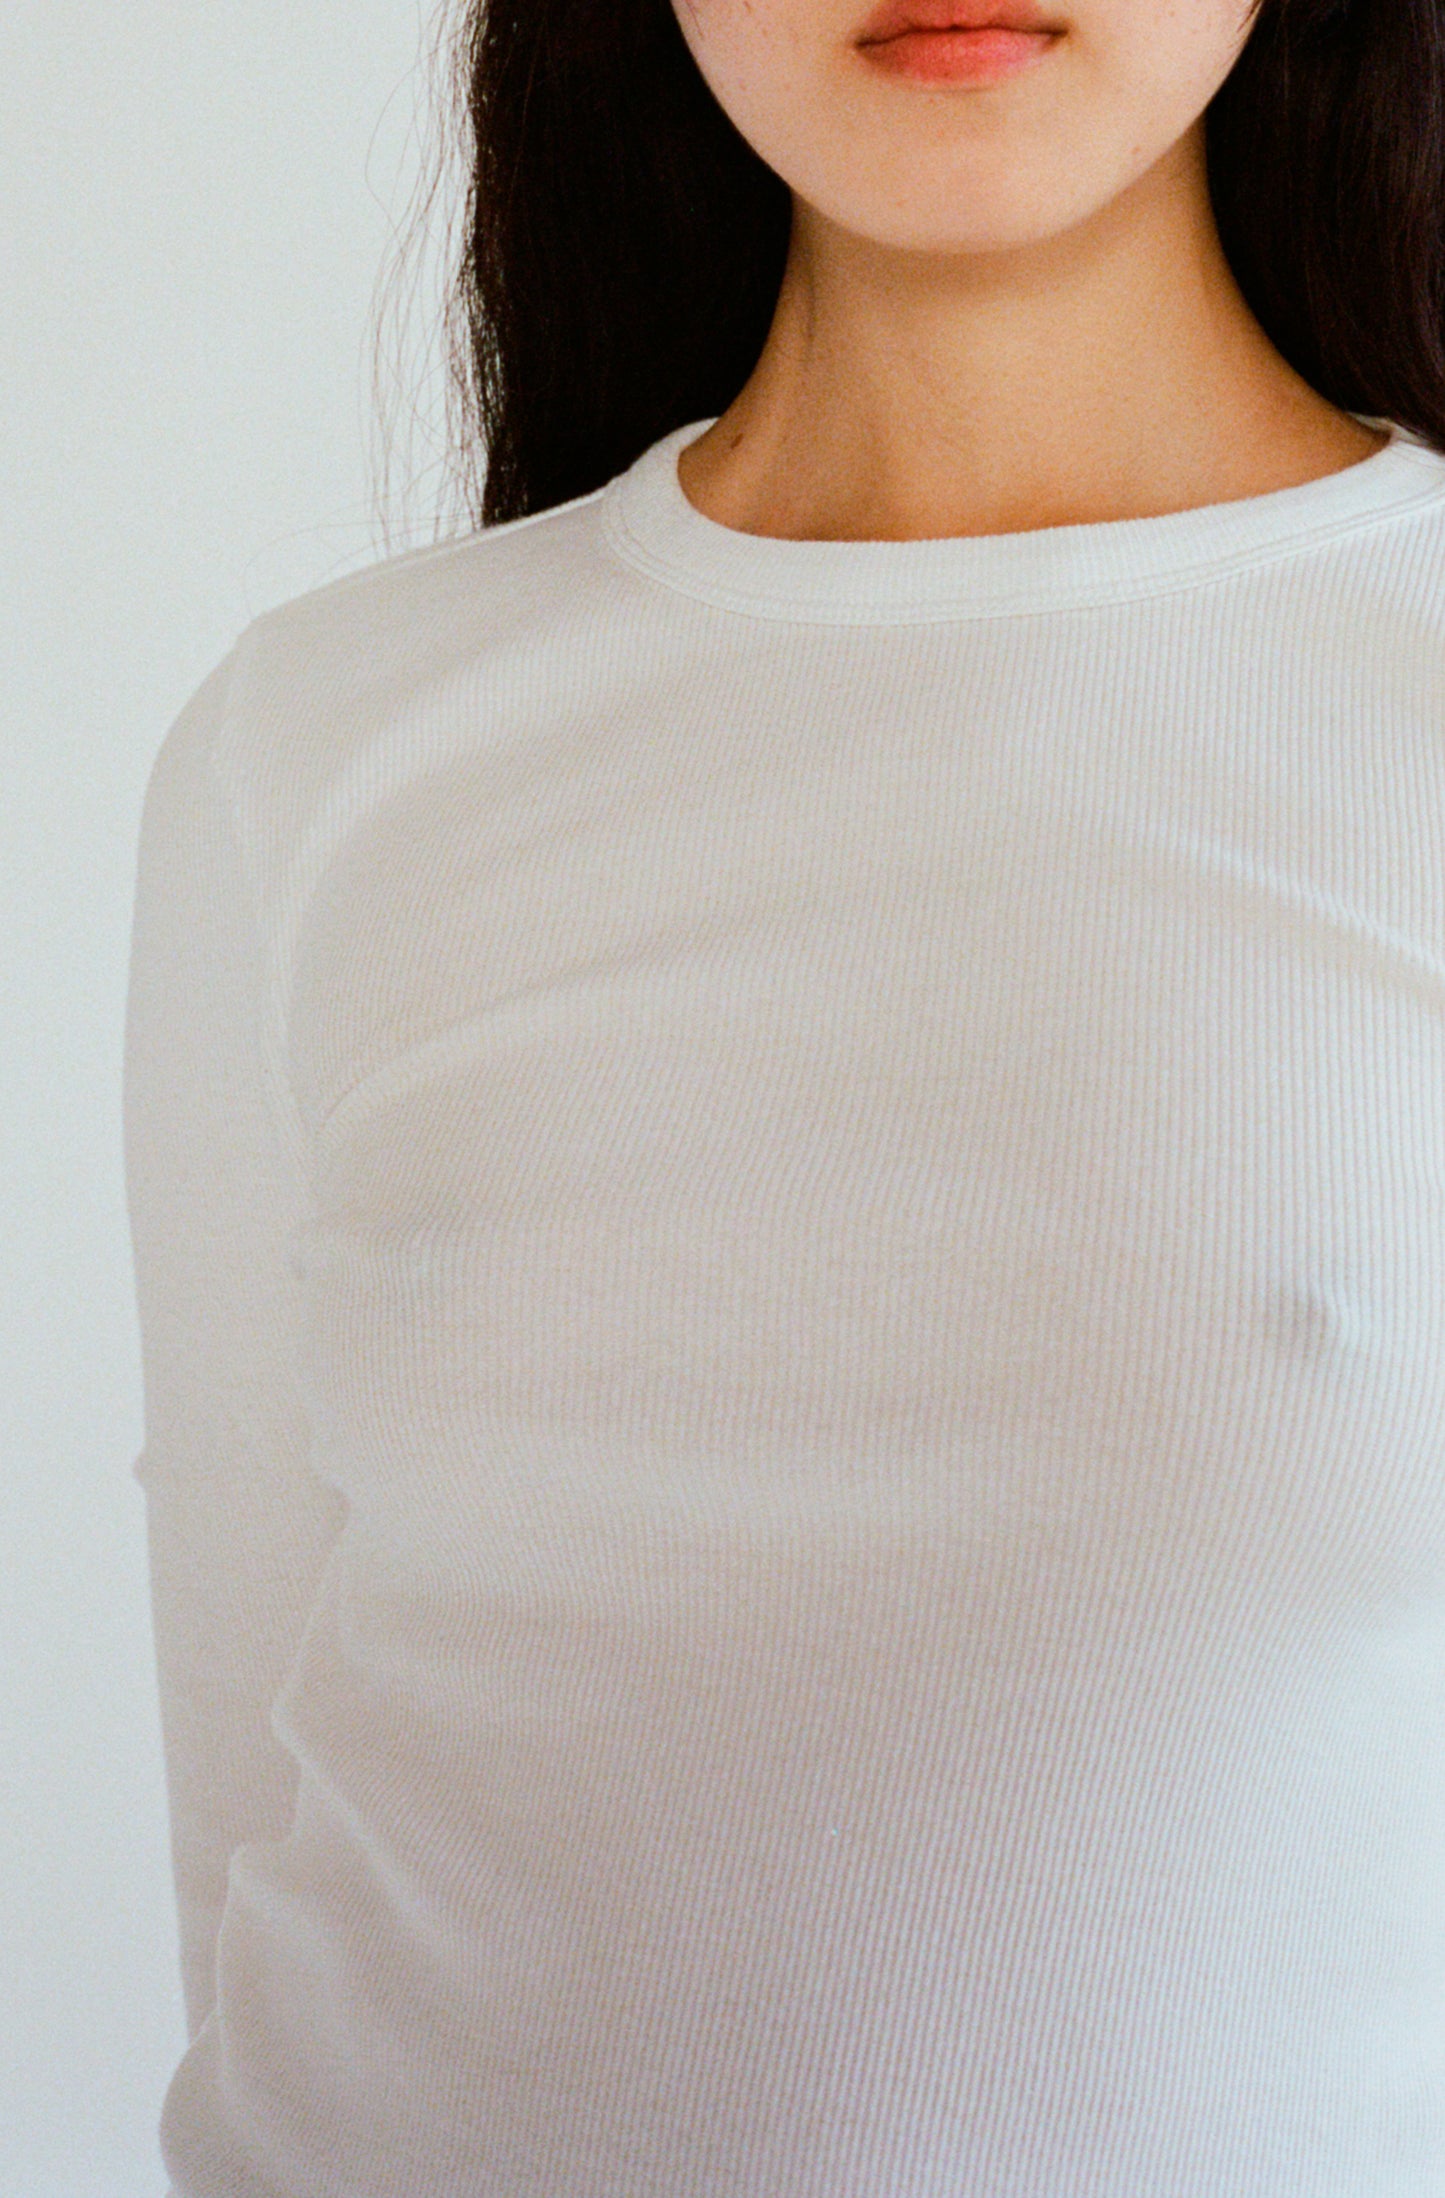 Le t-shirt à manches longues blanc pour femme en coton côtelé bio OMEAR, vue détaillée de face, encolure doublée